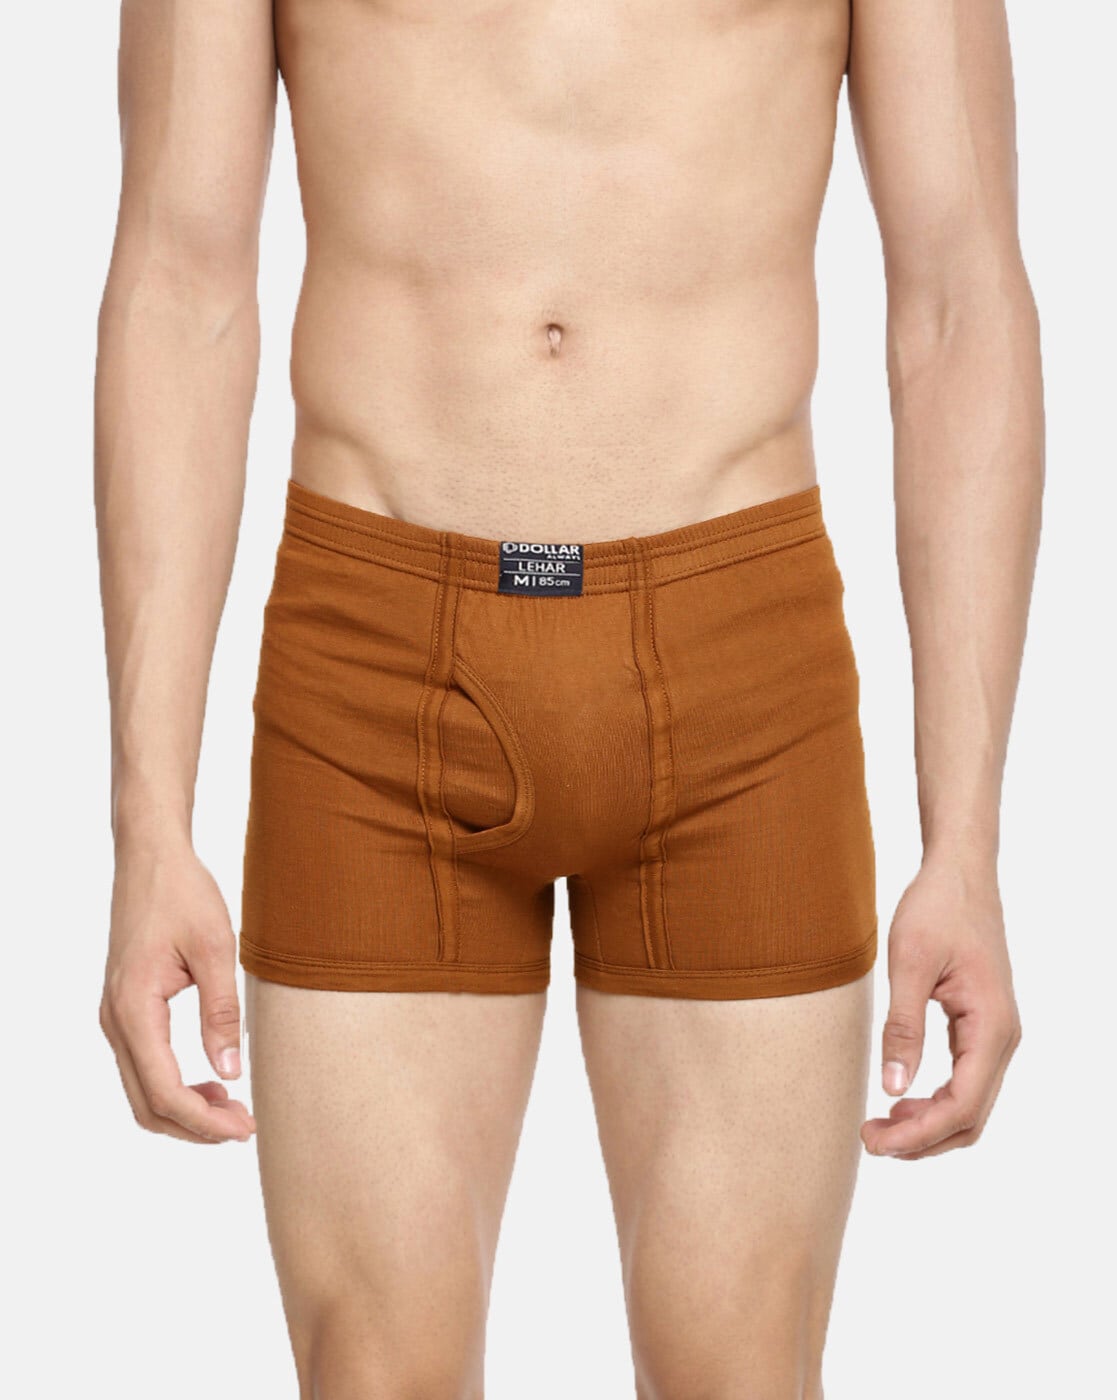 Buy Brown Trunks for Men by DOLLAR LEHAR Online